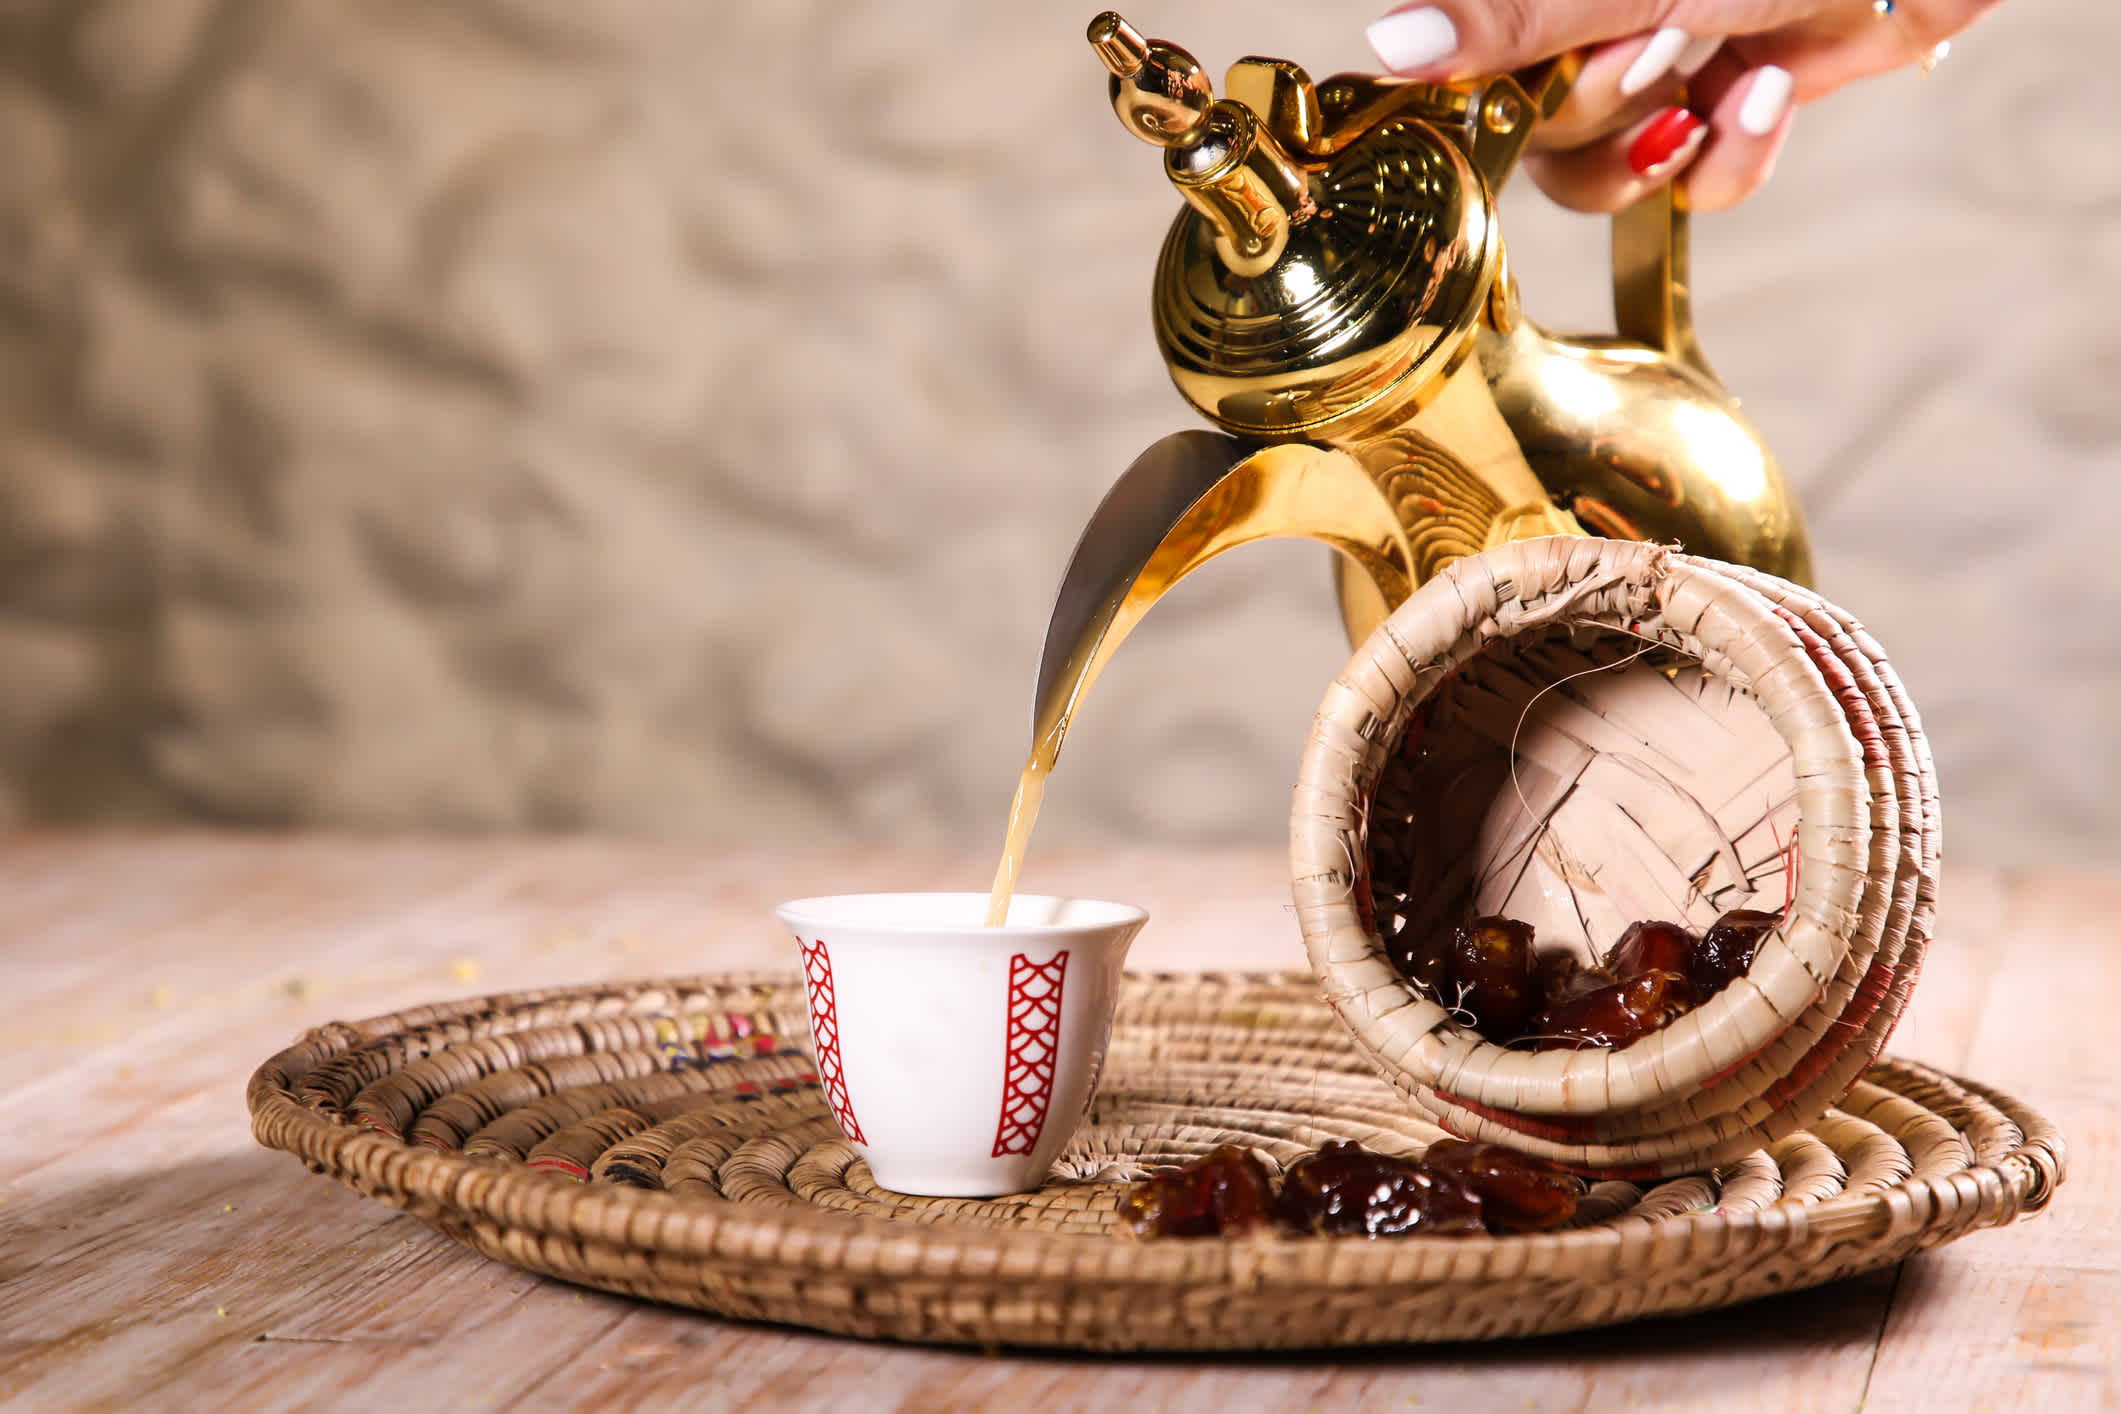 Arabischer Kaffee mit Datteln